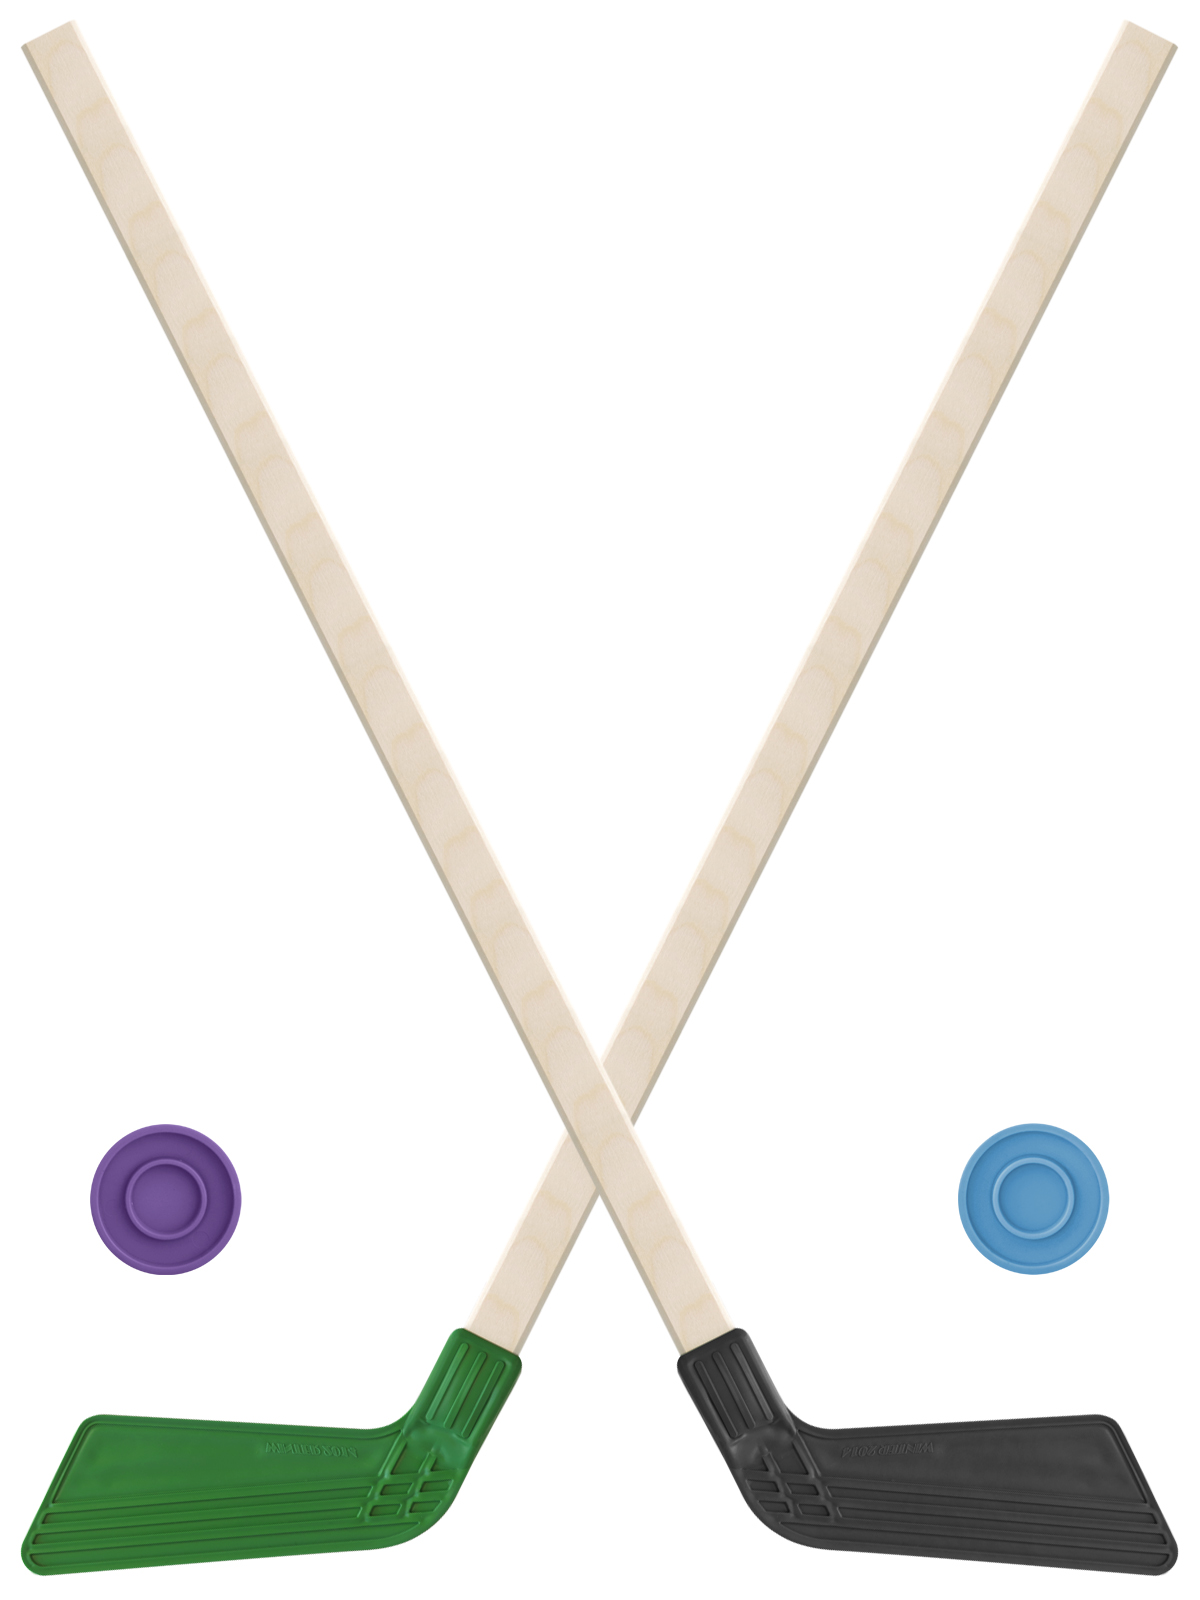 Детский хоккейный набор Задира-плюс клюшка хоккейная детская 80см (зел и черн) 2шт +2шайбы клюшка с мячом набор 77 см d 7 см микс